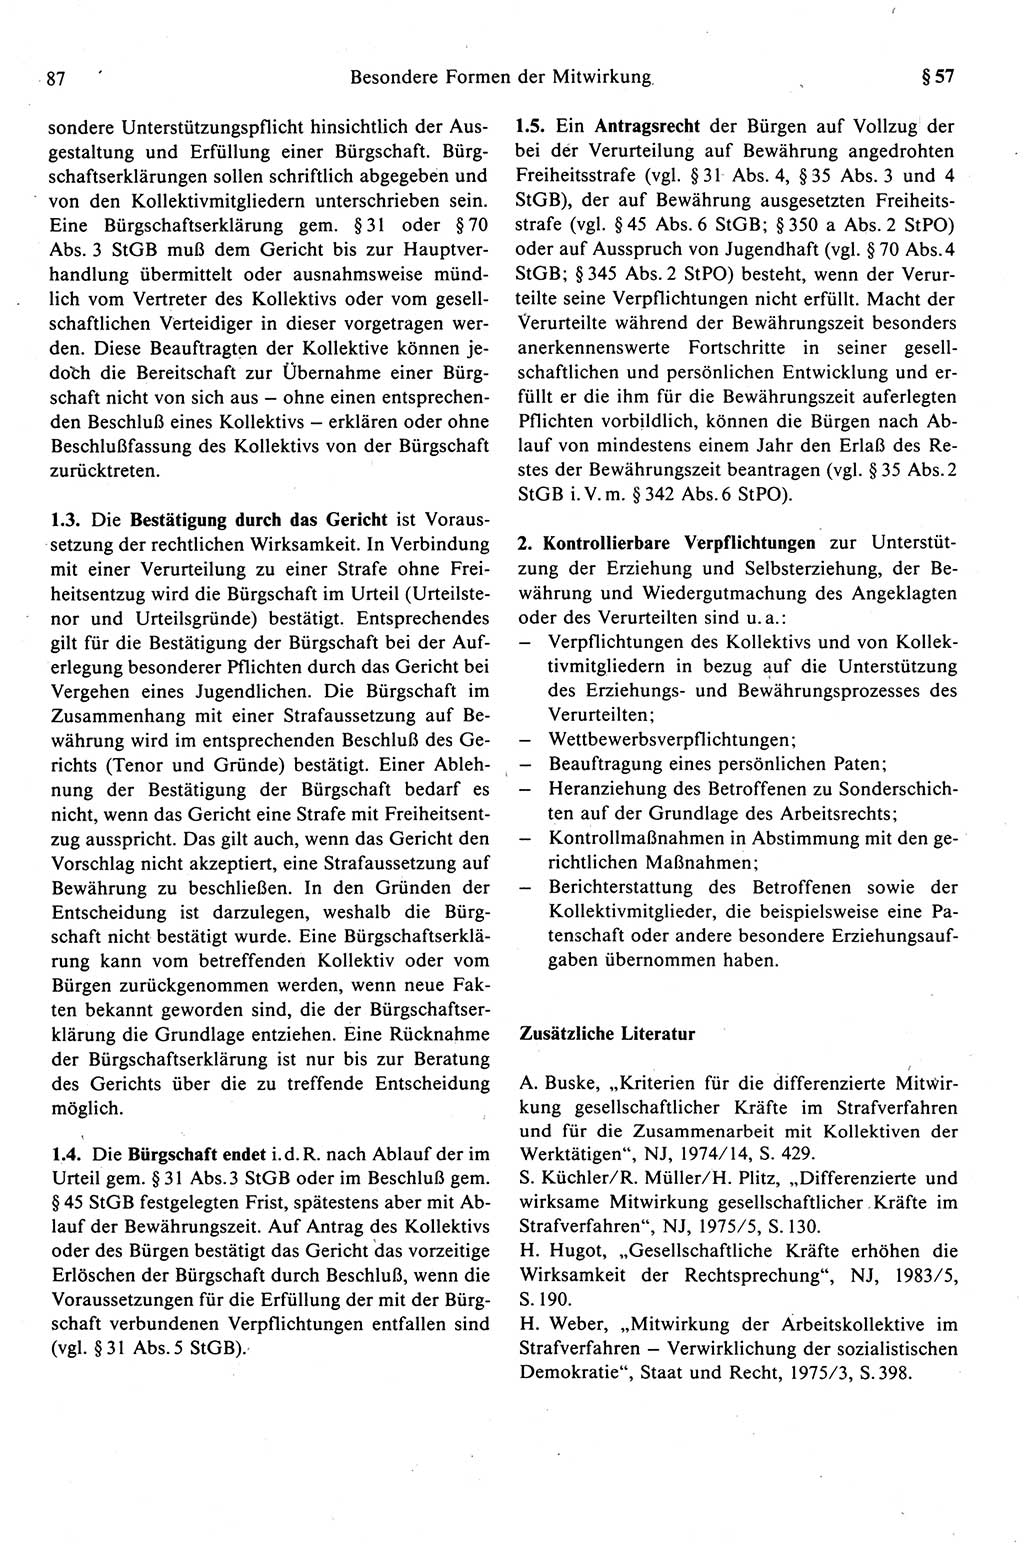 Strafprozeßrecht der DDR (Deutsche Demokratische Republik), Kommentar zur Strafprozeßordnung (StPO) 1989, Seite 87 (Strafprozeßr. DDR Komm. StPO 1989, S. 87)